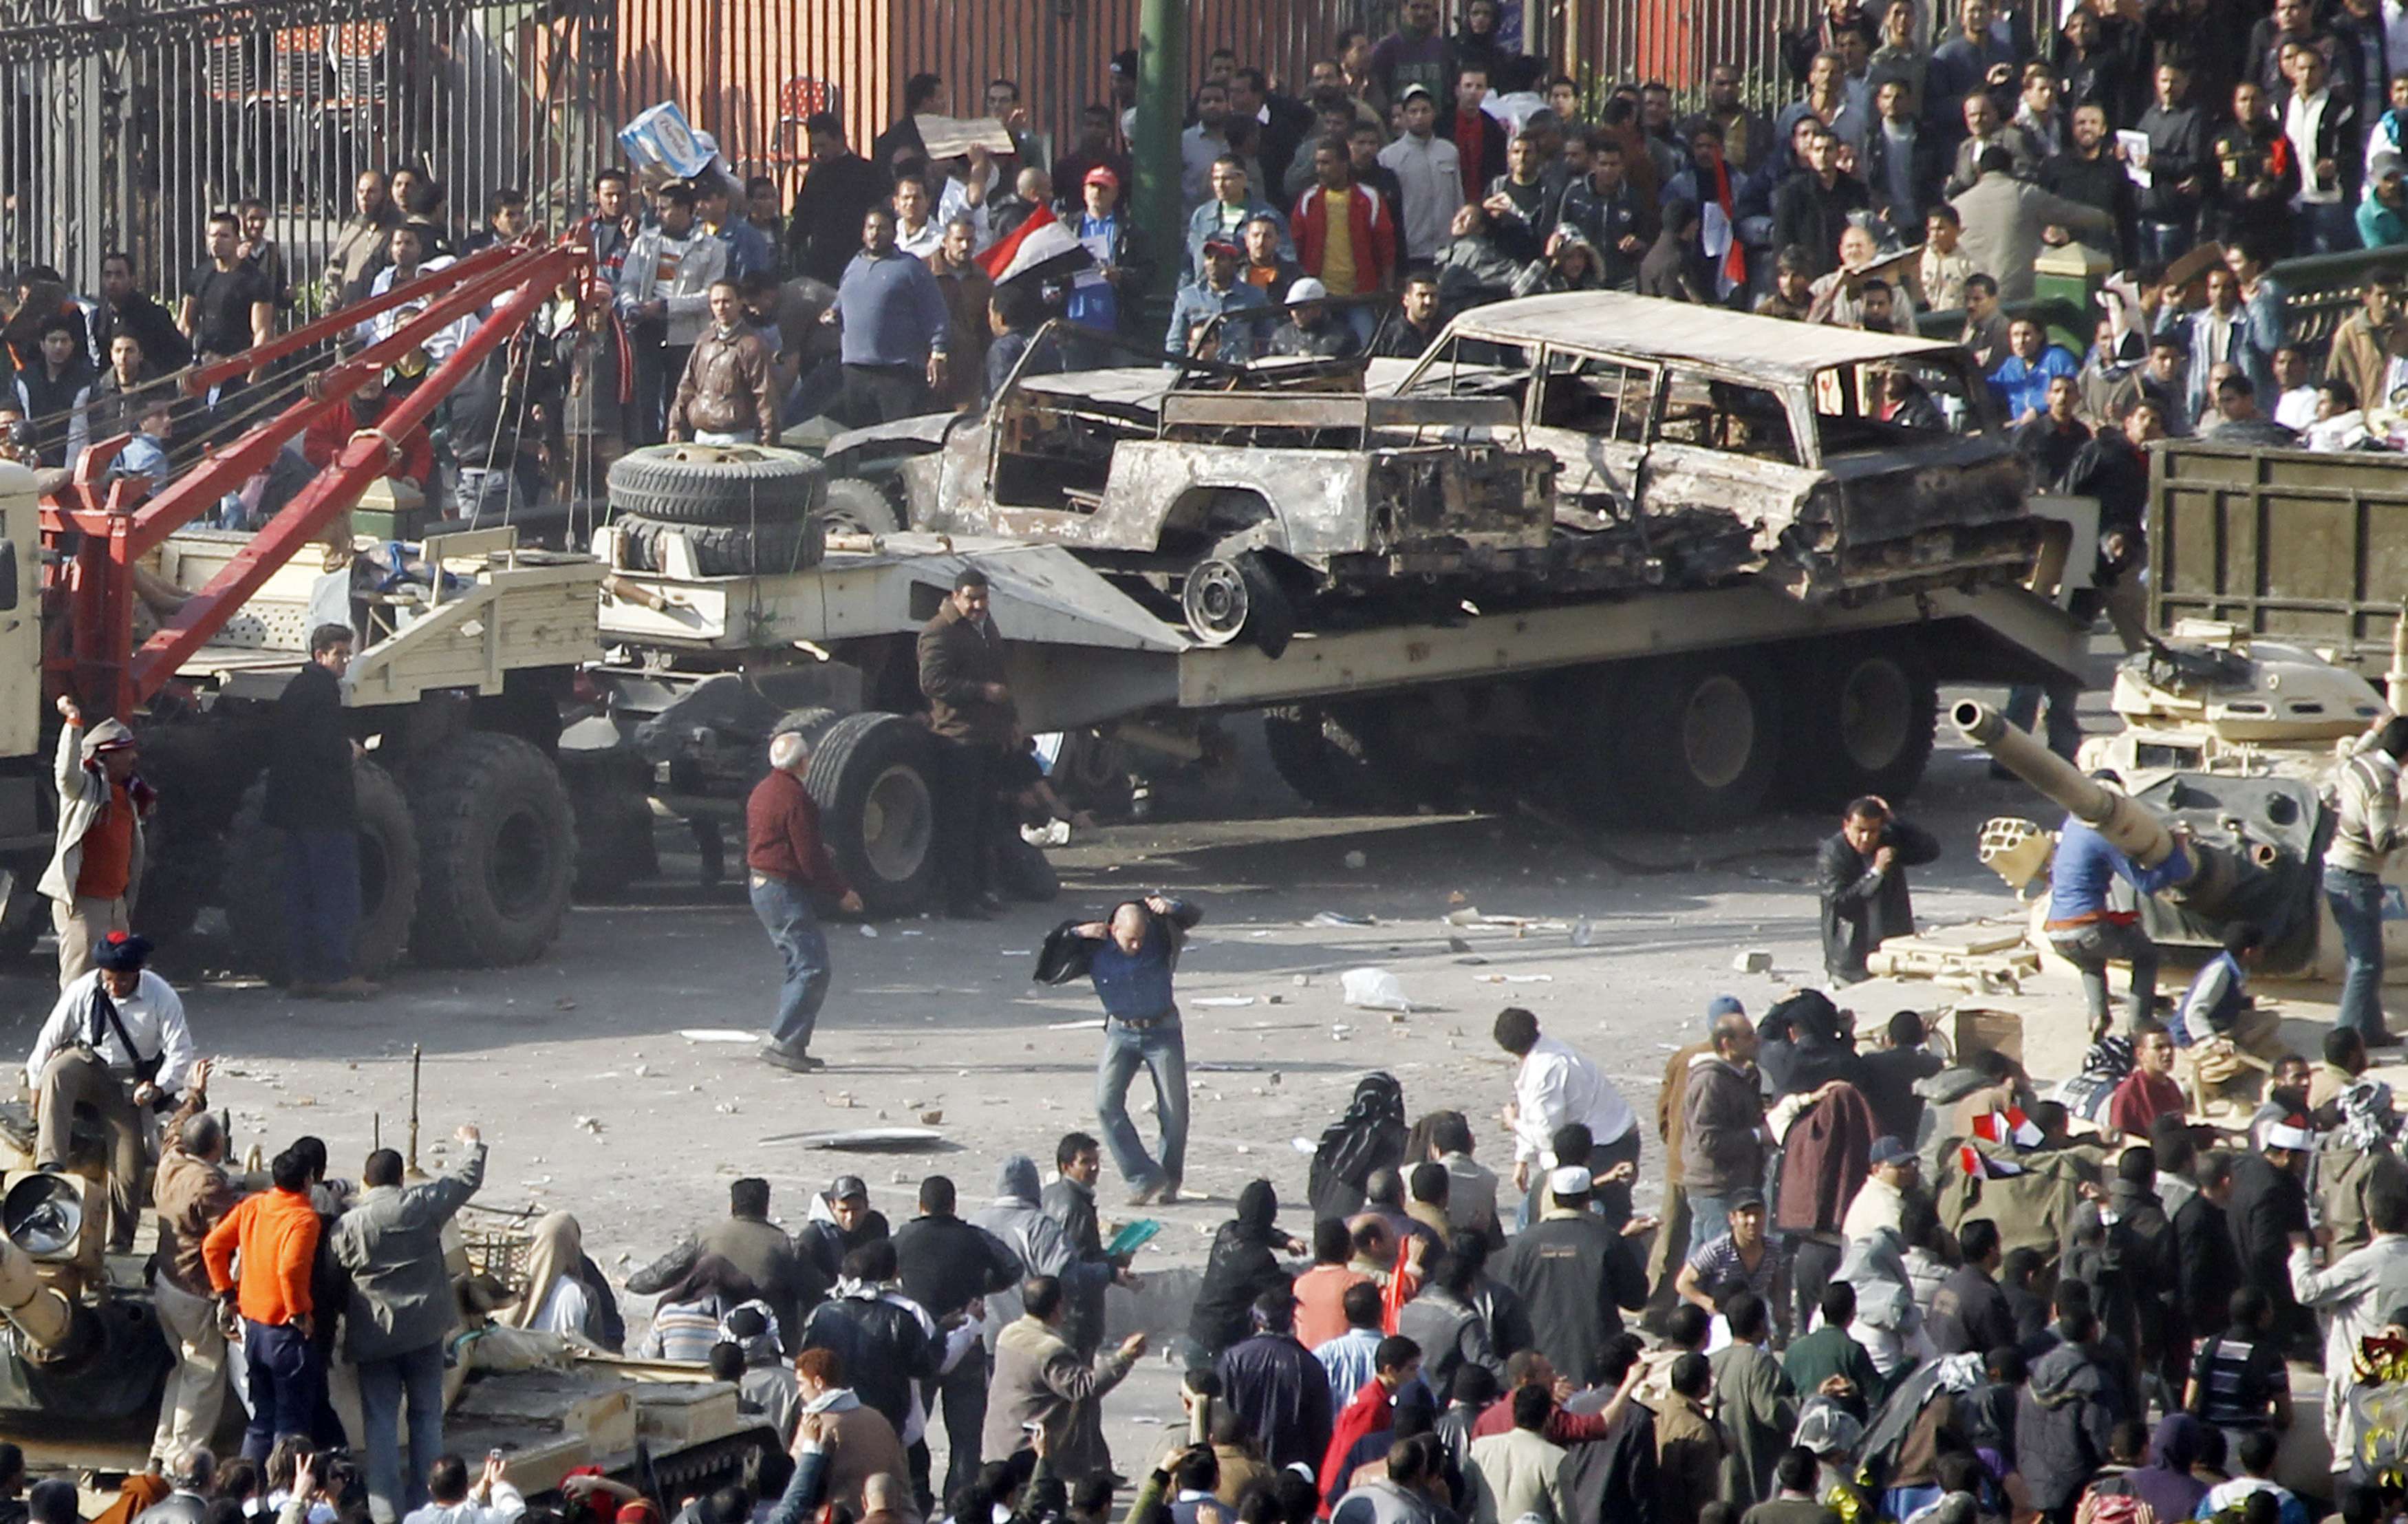 Χθες η πλατεία Ταχρίρ ήταν γεμάτη κόσμο χωρίς να συμβεί τίποτα. 24 ώρες μετά, είναι το πεδίο των μαχών - ΦΩΤΟ REUTERS